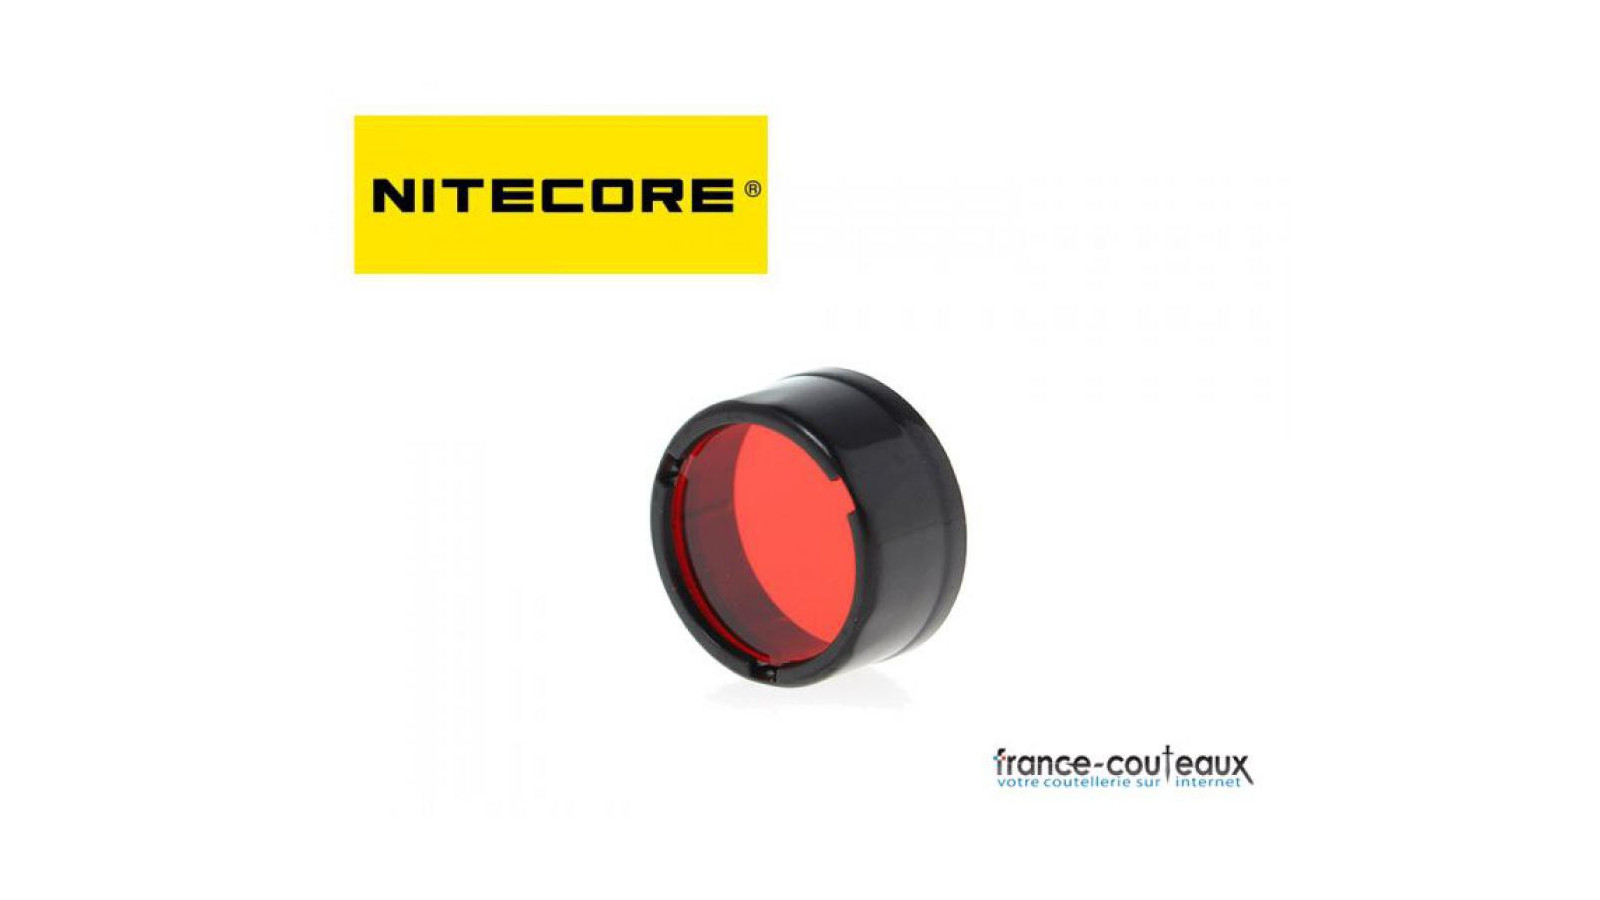 Filtre rouge Nitecore pour lampe de poche diametre 25 mm